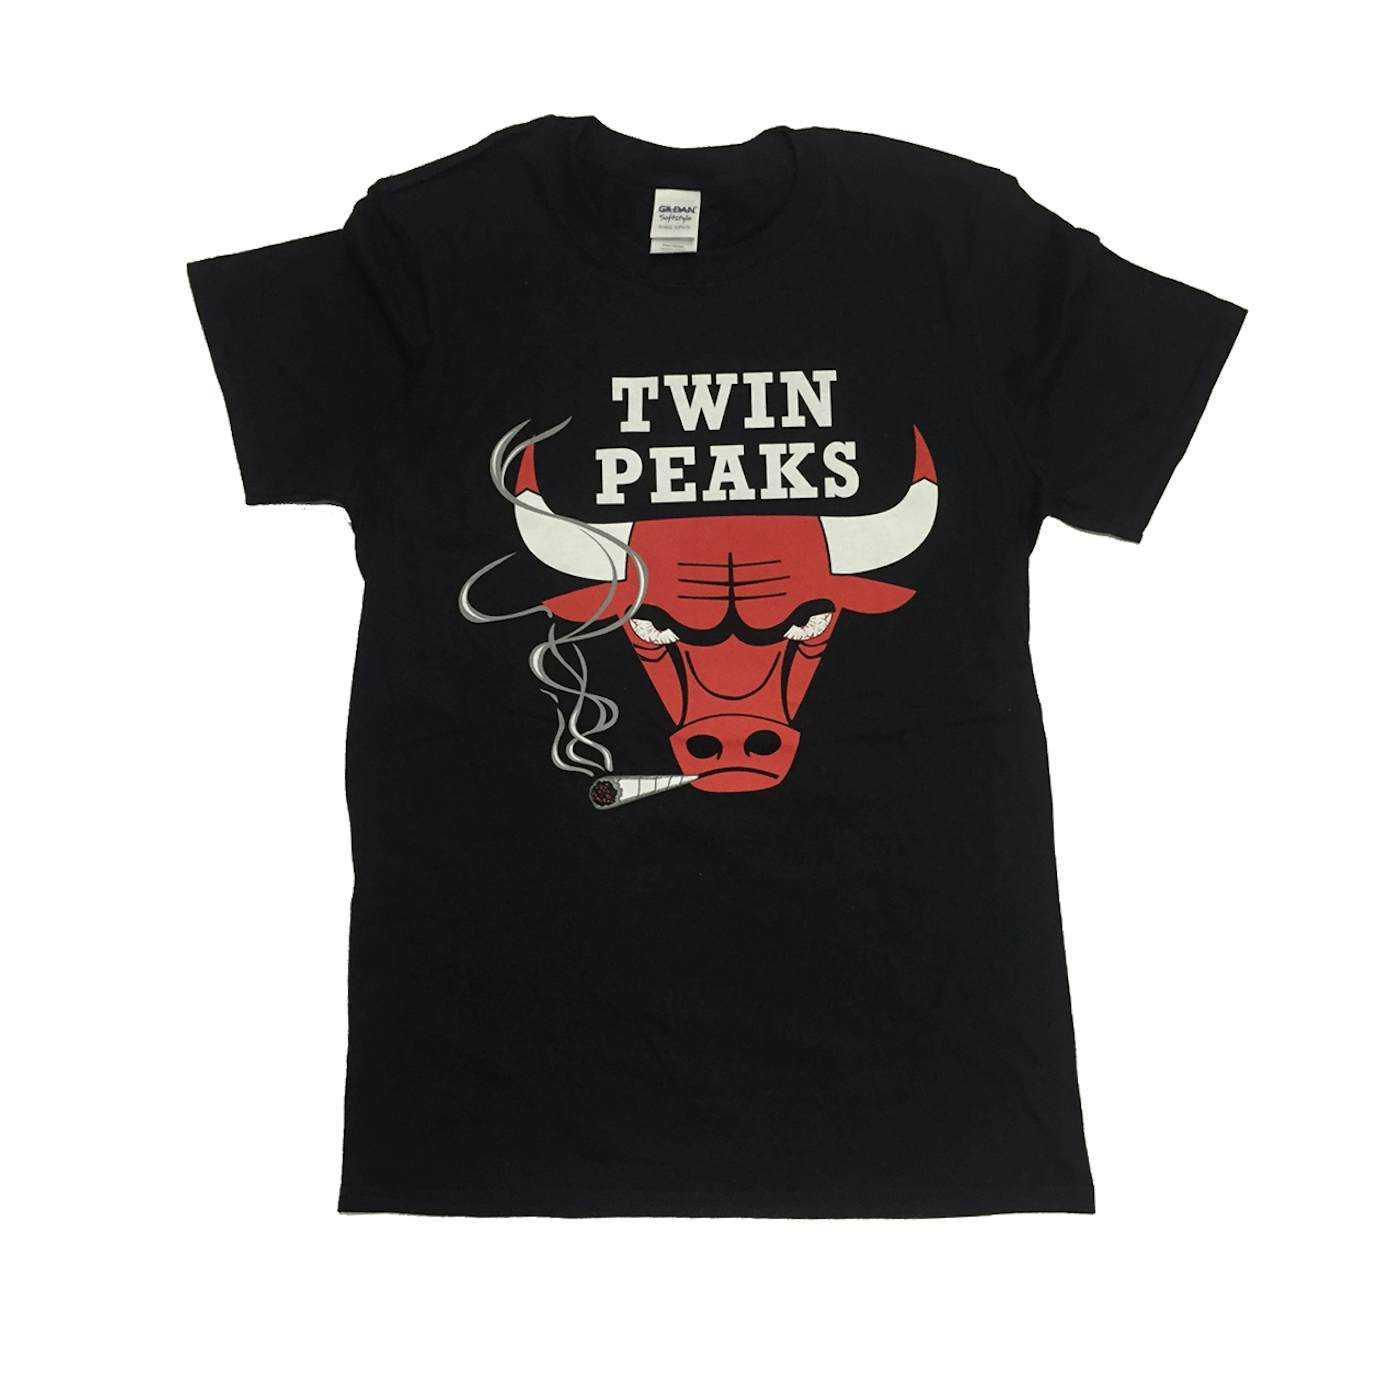 Twin Peaks Chicago Bulls Black Tshirt $21.68$17.34